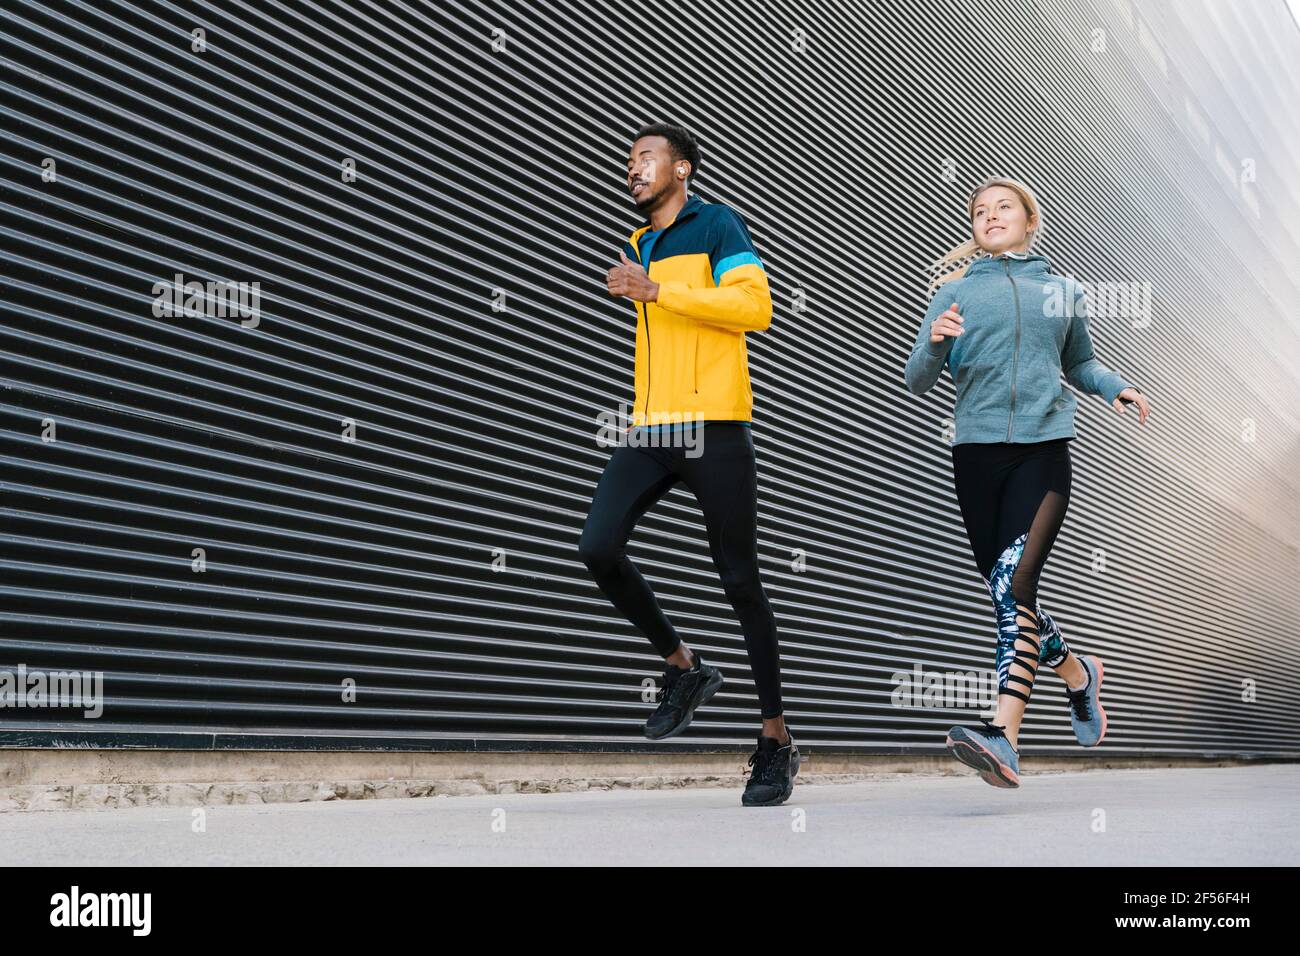 Männliche und weibliche Athletinnen, die während des Sporttrainings auf dem Bürgersteig laufen An der Wand Stockfoto